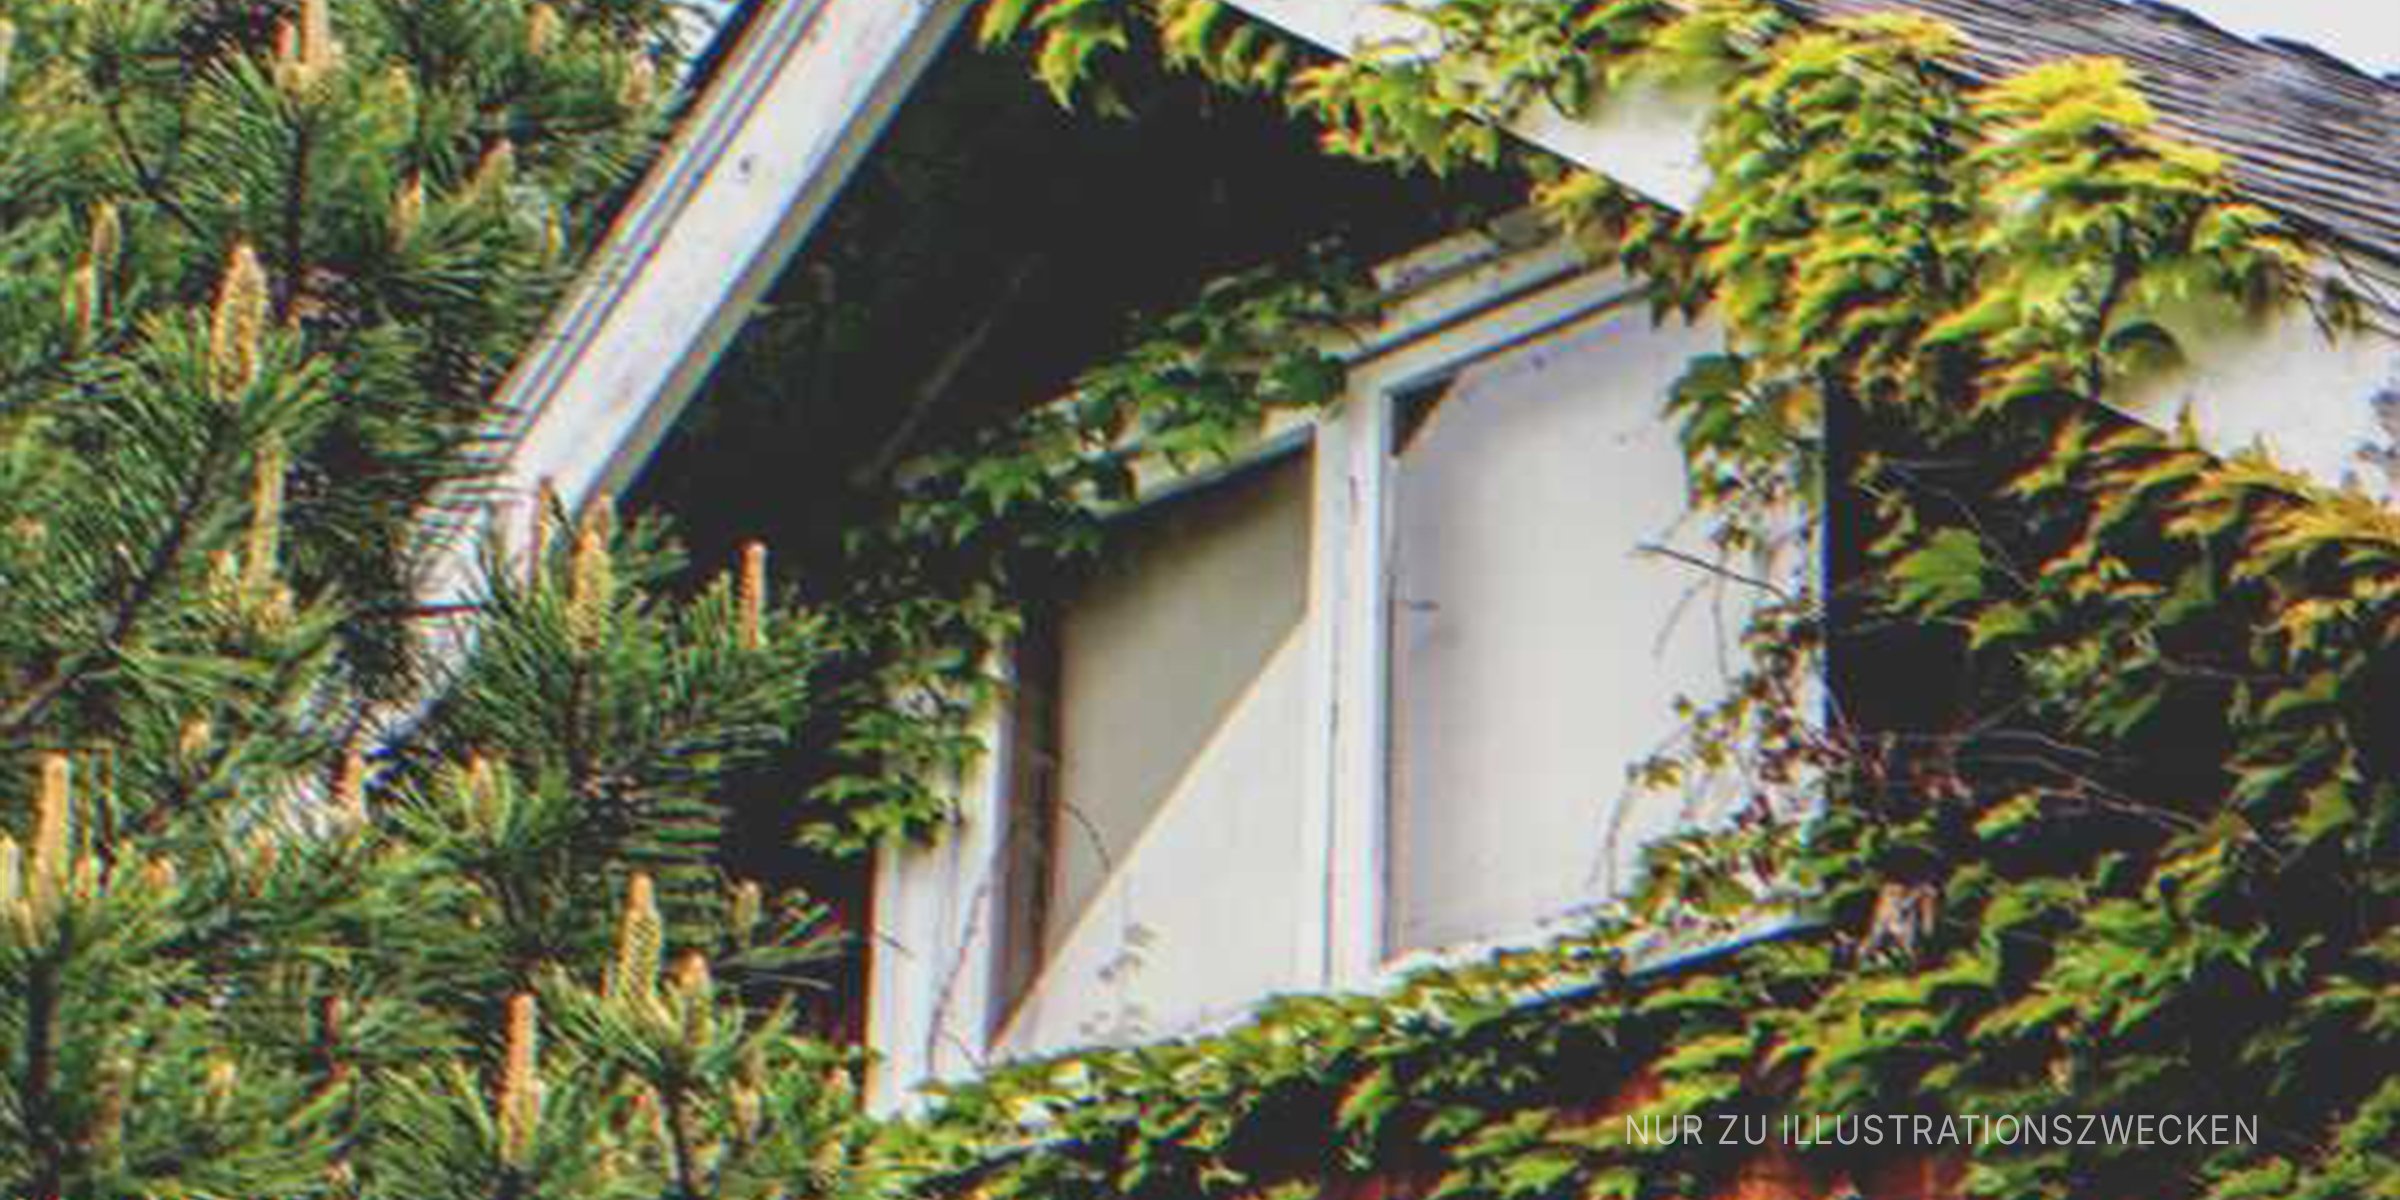 Dachfenster umgeben von Grün. | Quelle: Flickr / marneejill (CC BY-SA 2.0)